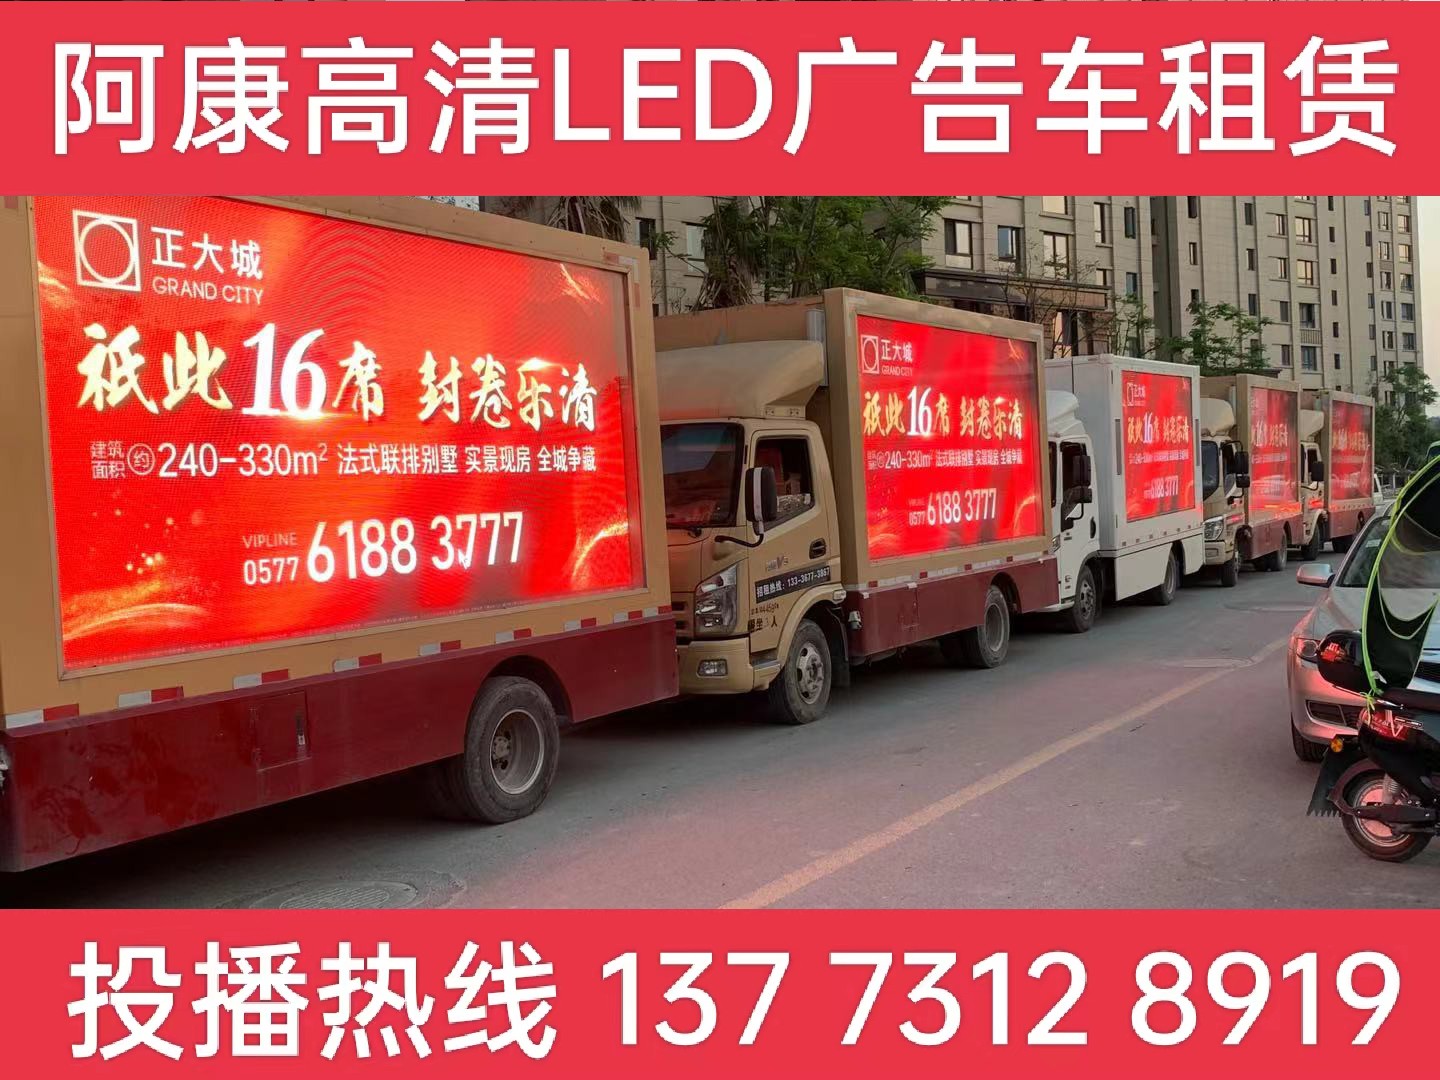 高邮LED广告车出租